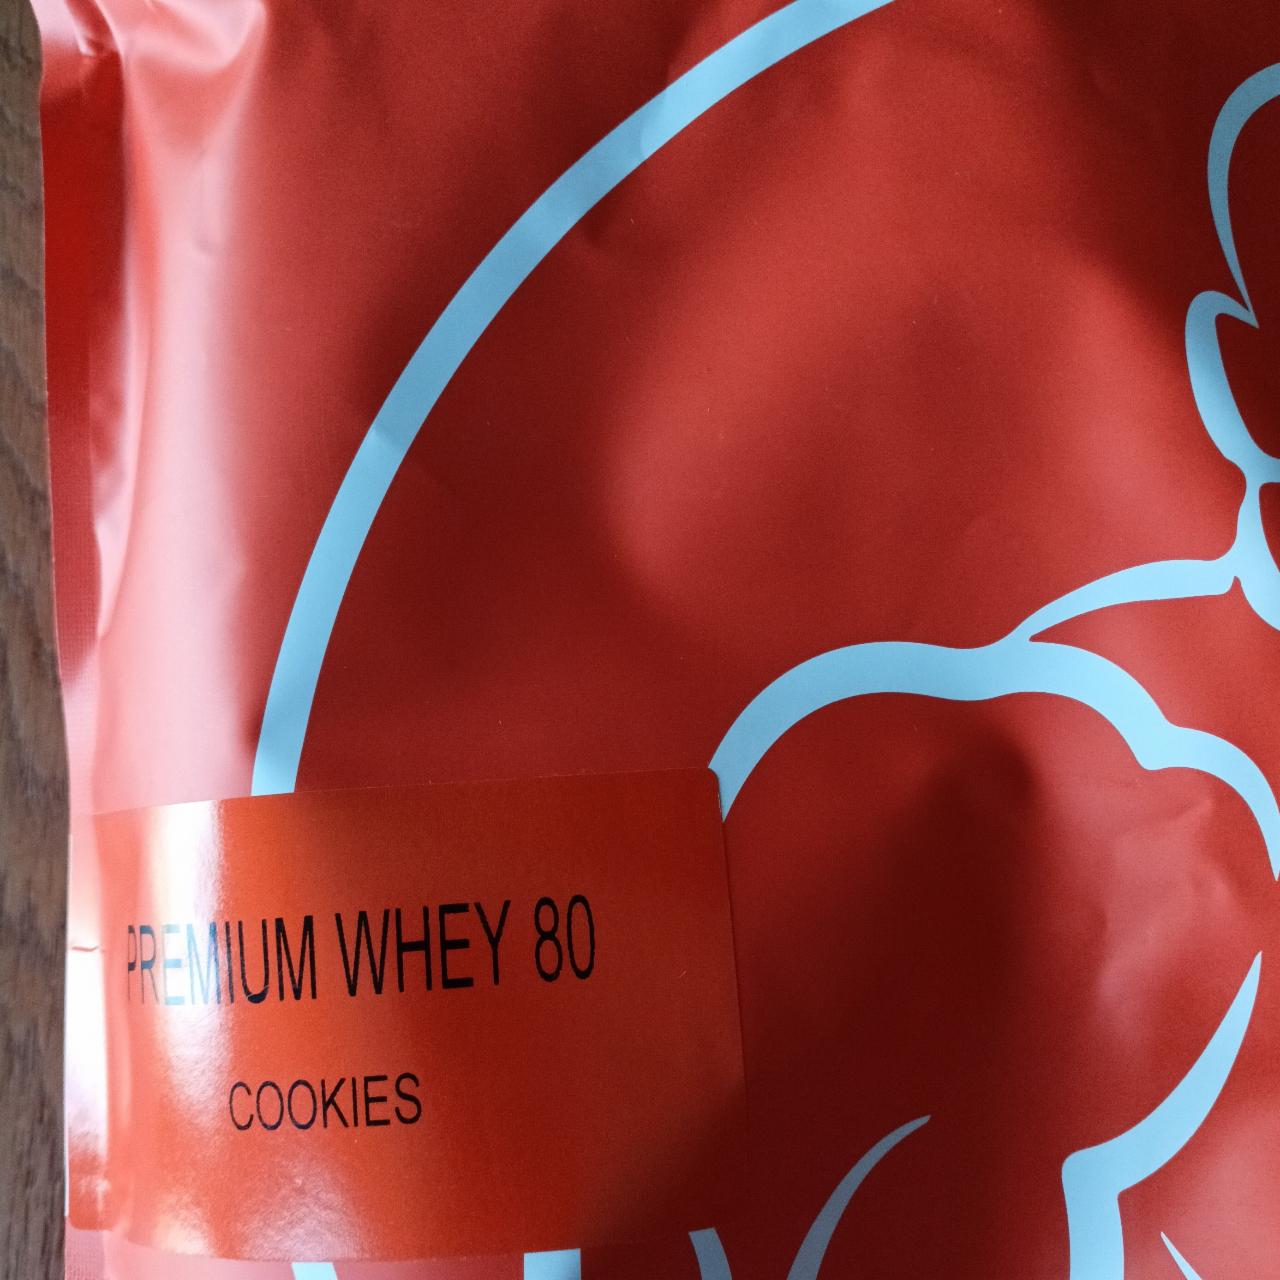 Fotografie - Premium Whey 80 Cookies StillMass